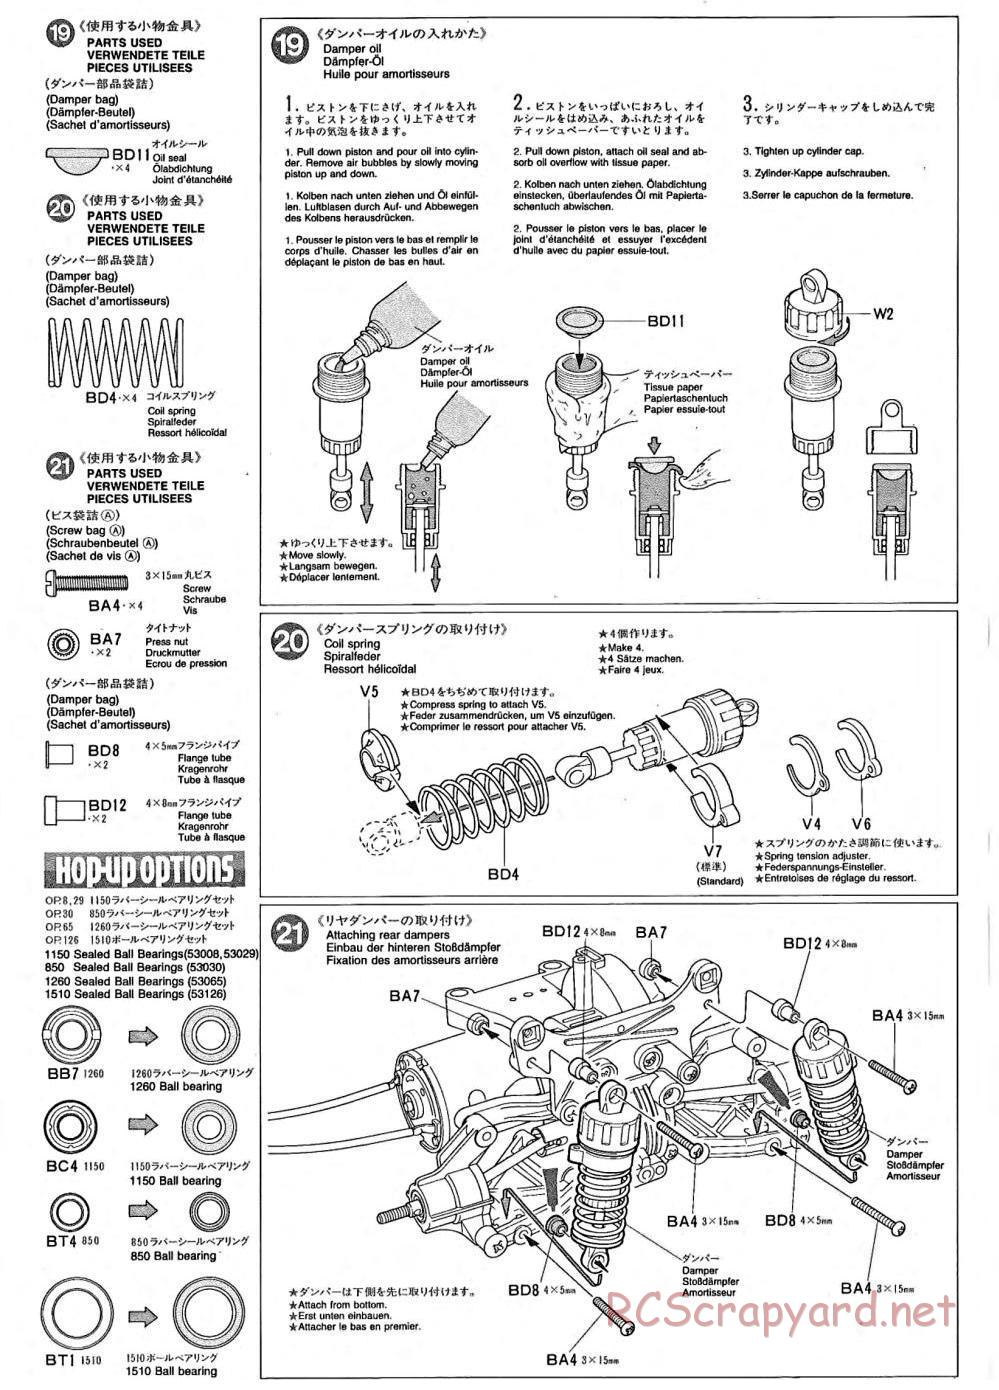 Tamiya - TA-02 Chassis - Manual - Page 7